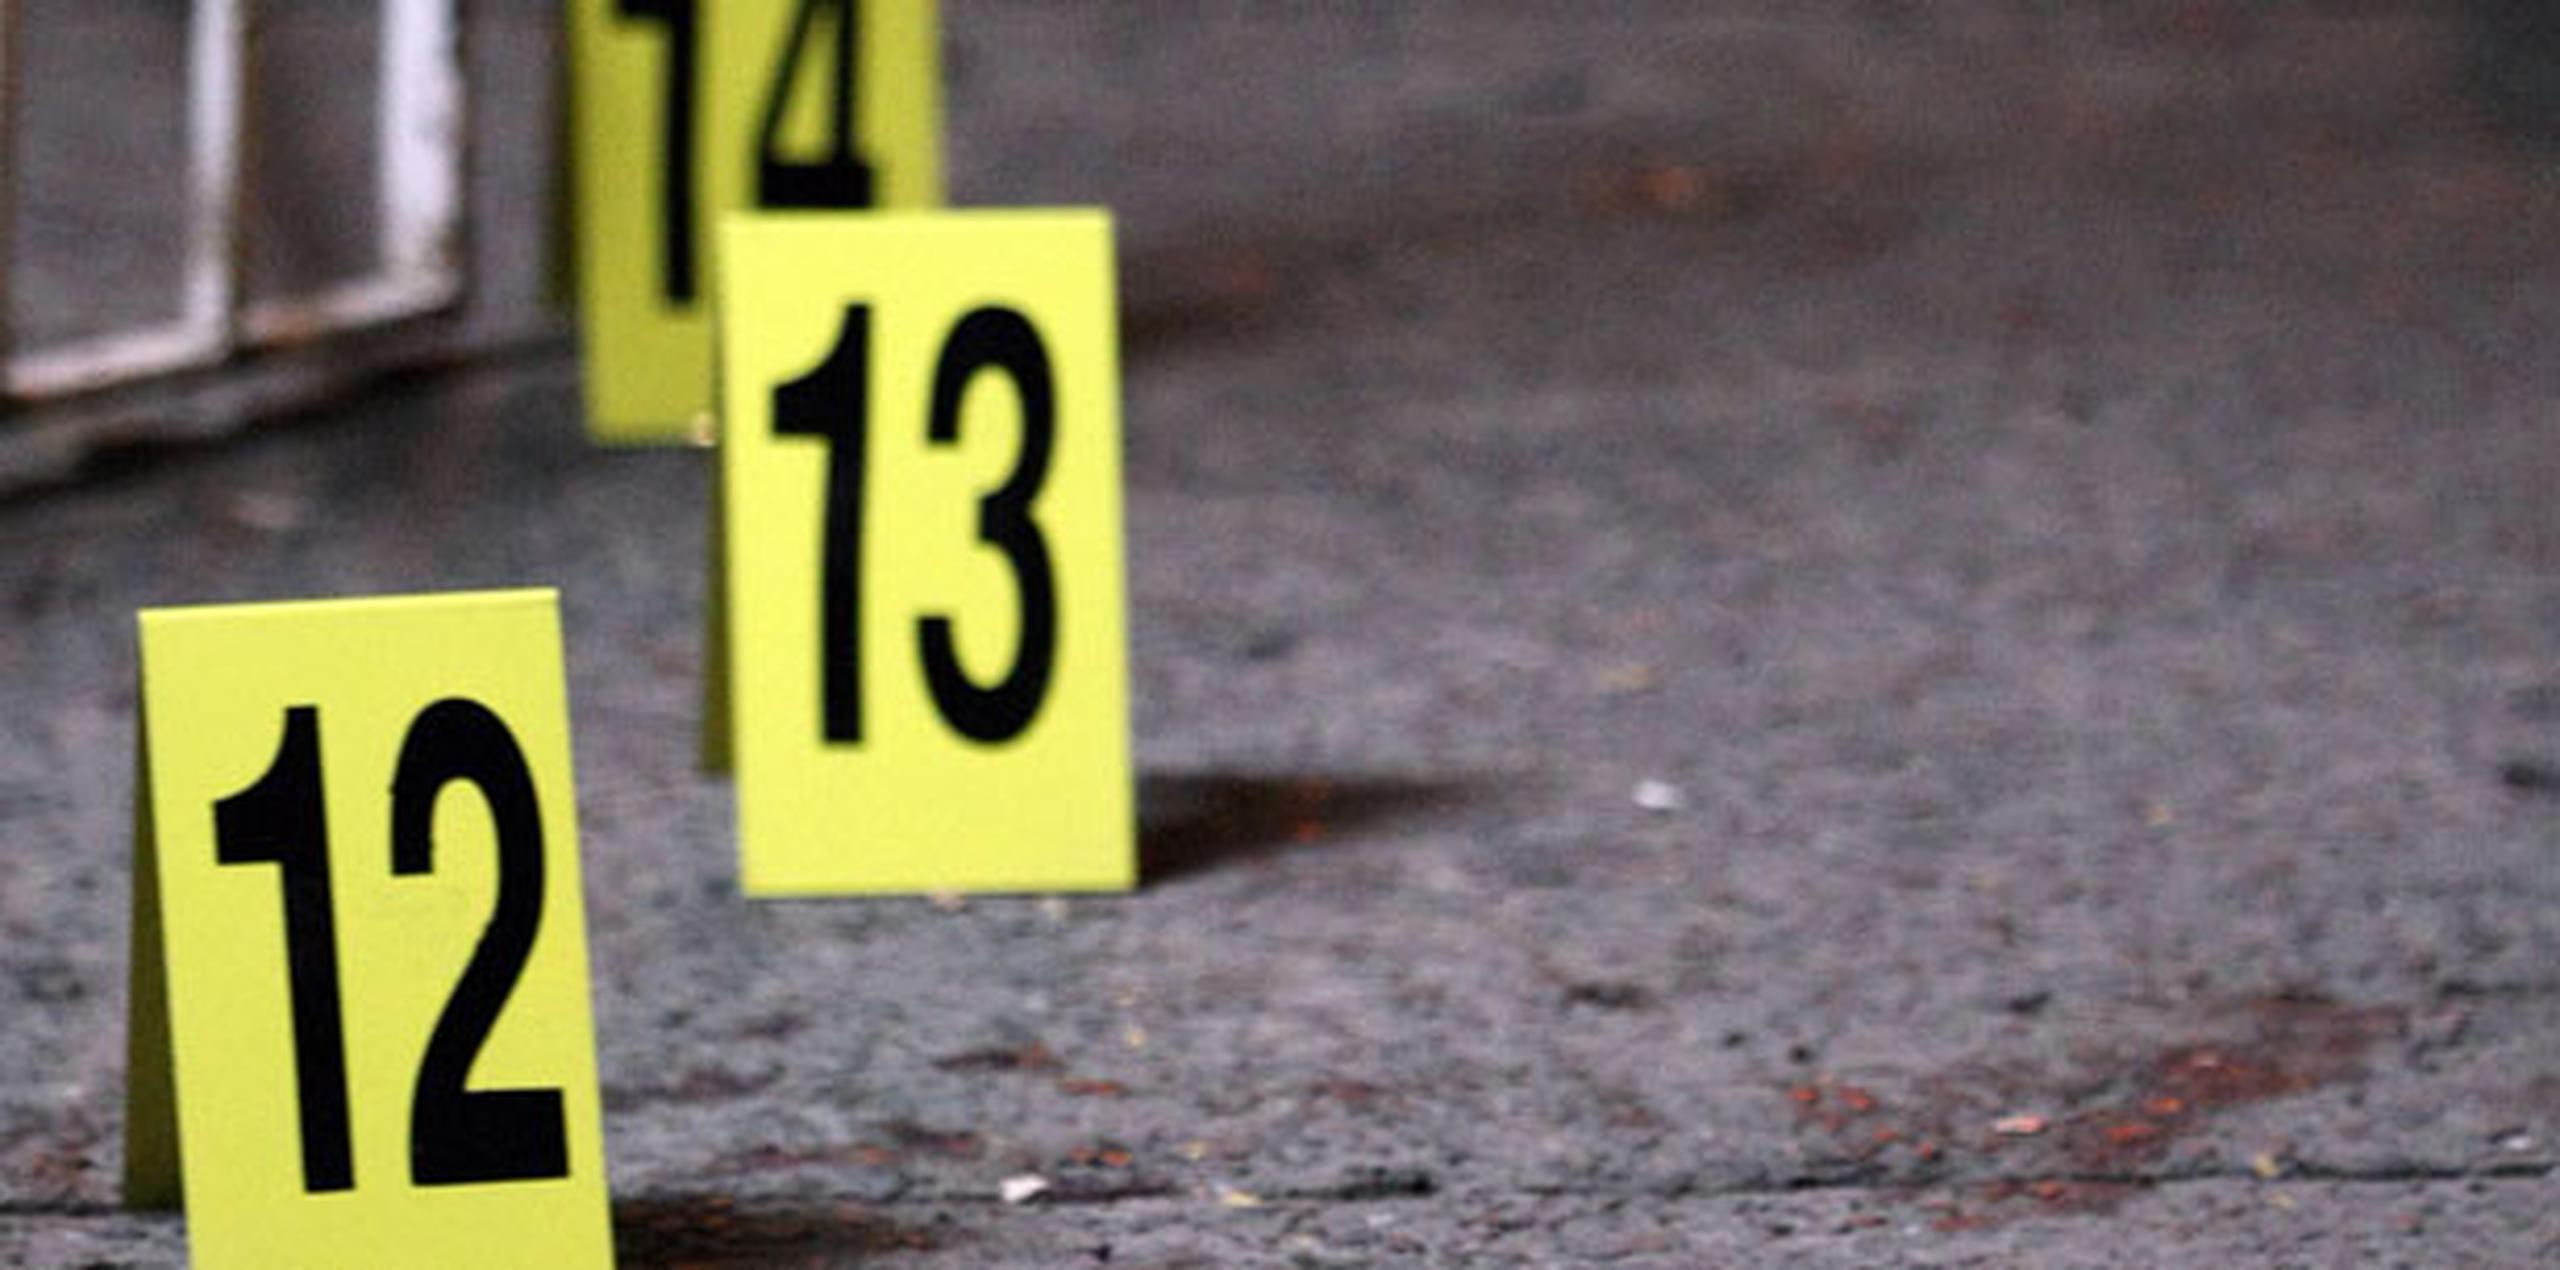 En la escena, los investigadores encontraron varios casquillos de bala. (Archivo)